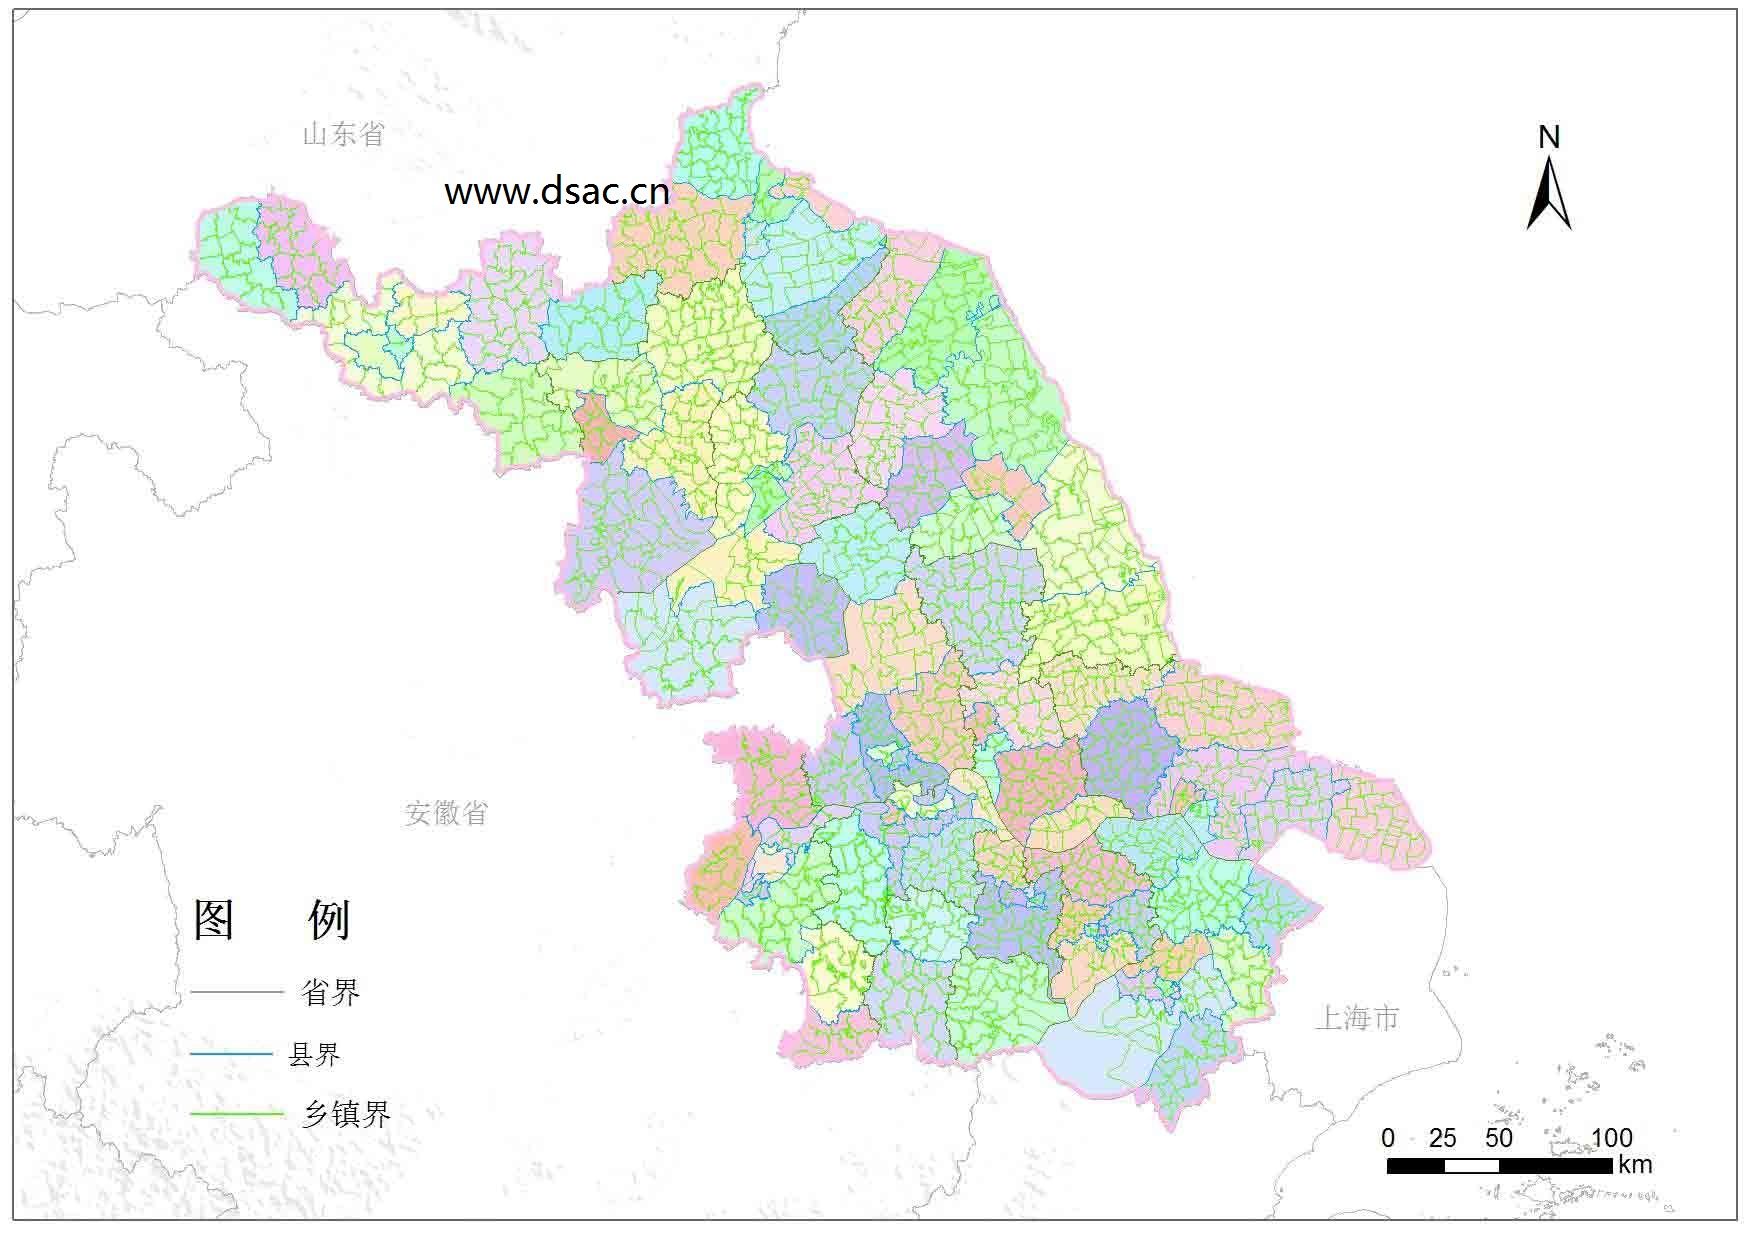 看最新江苏省乡镇行政区划有哪些变化?